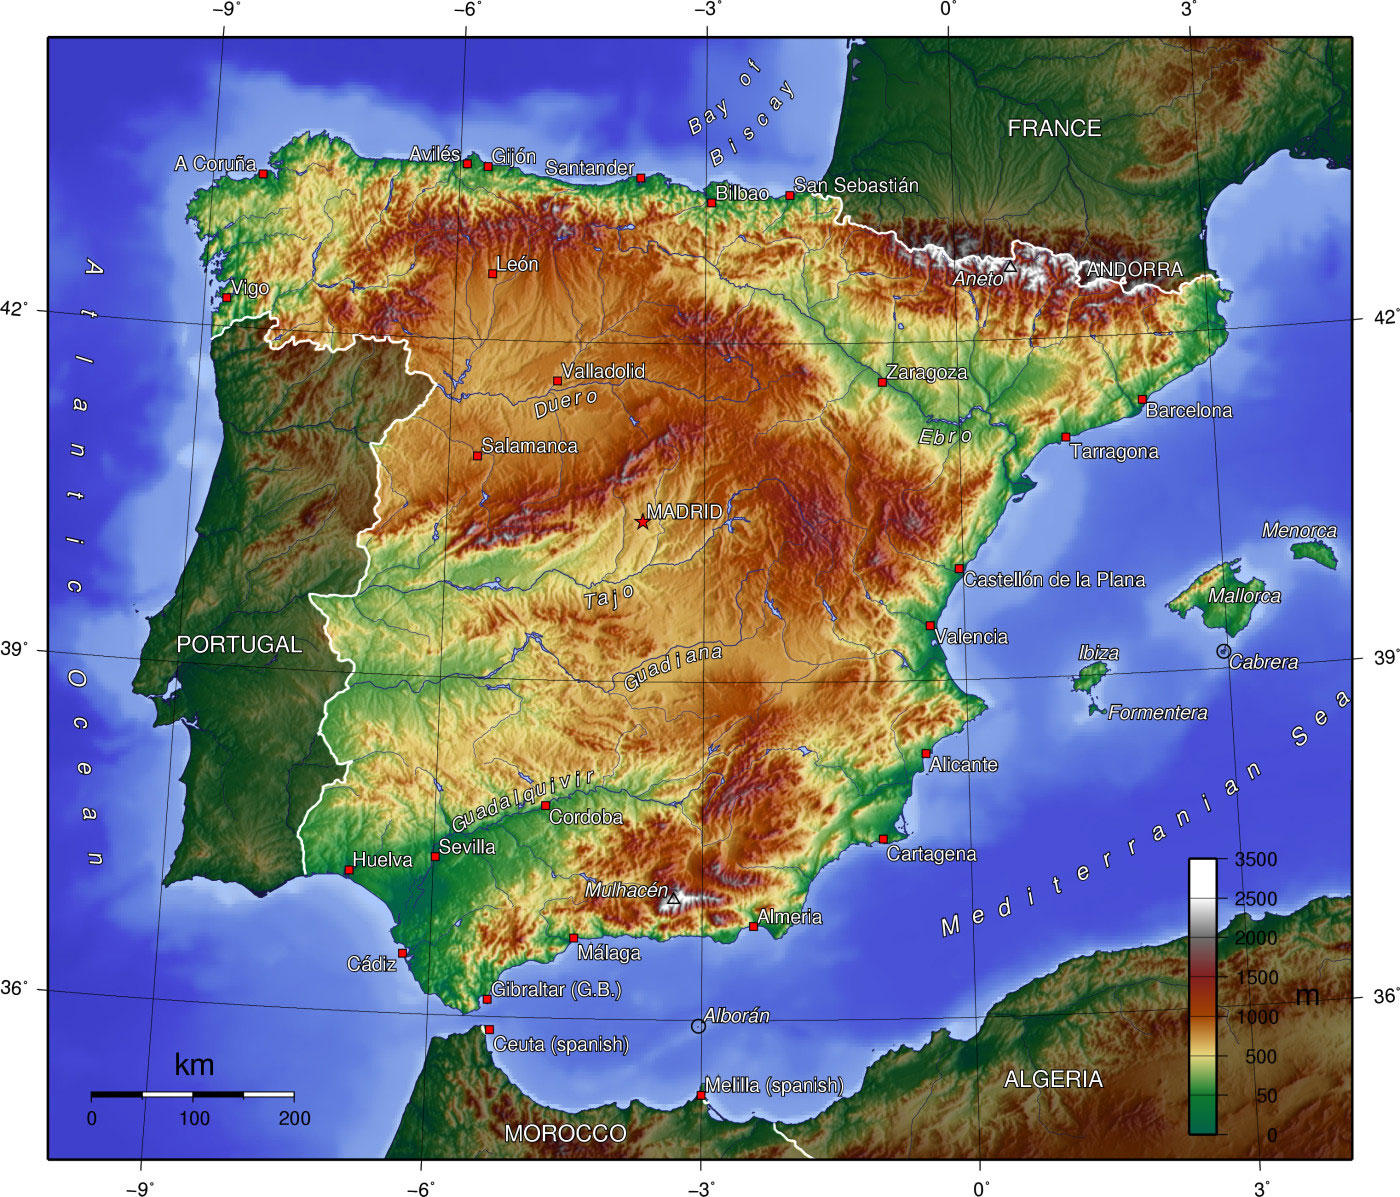 Bild Spanien - topografisk karta - Bild 17047